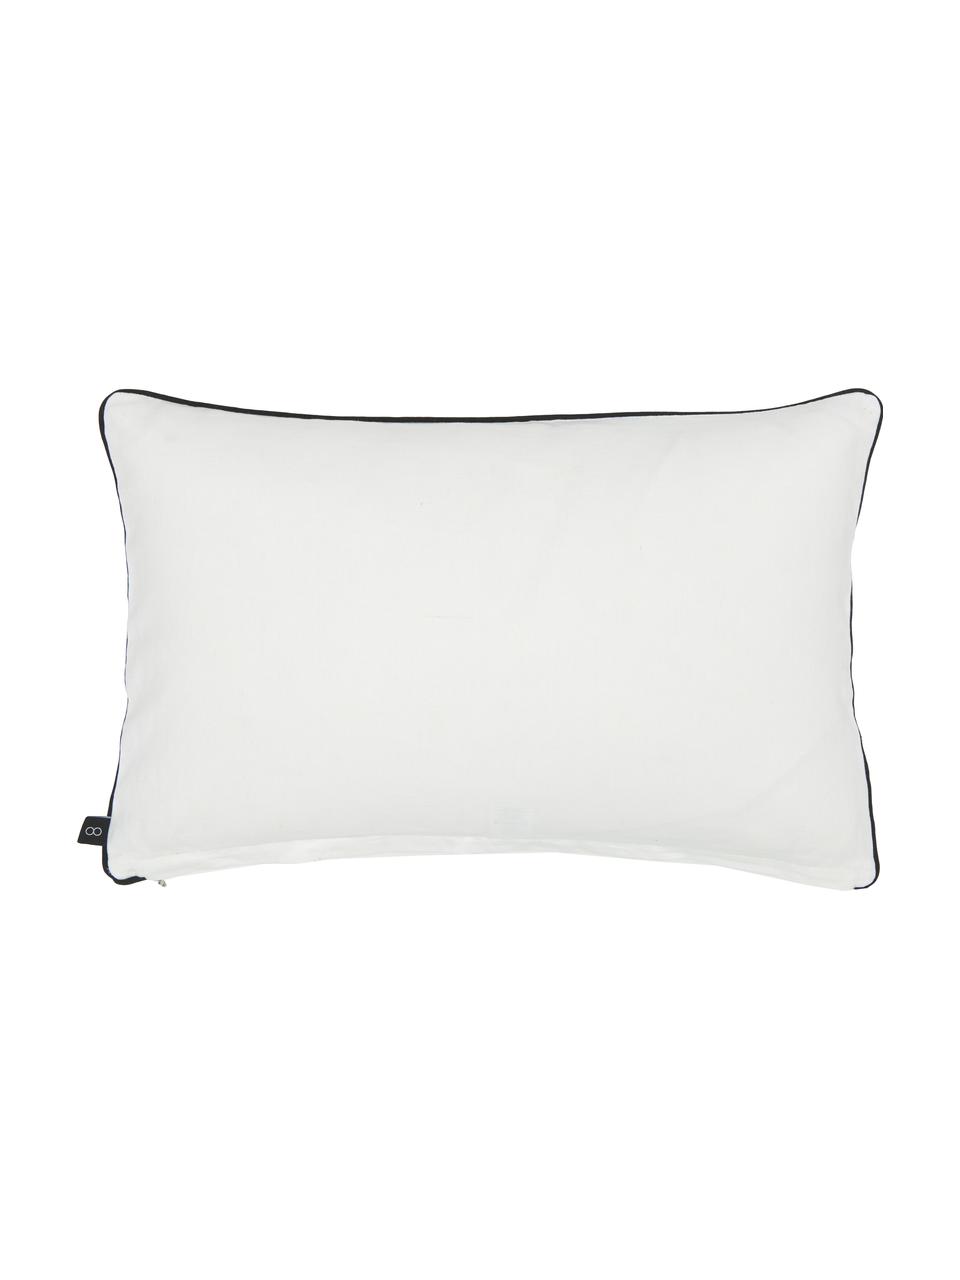 Poszewka na poduszkę z bawełny z haftem Terra Nova, 100% bawełna, Biały, beżowy, czarny, S 40 x D 60 cm